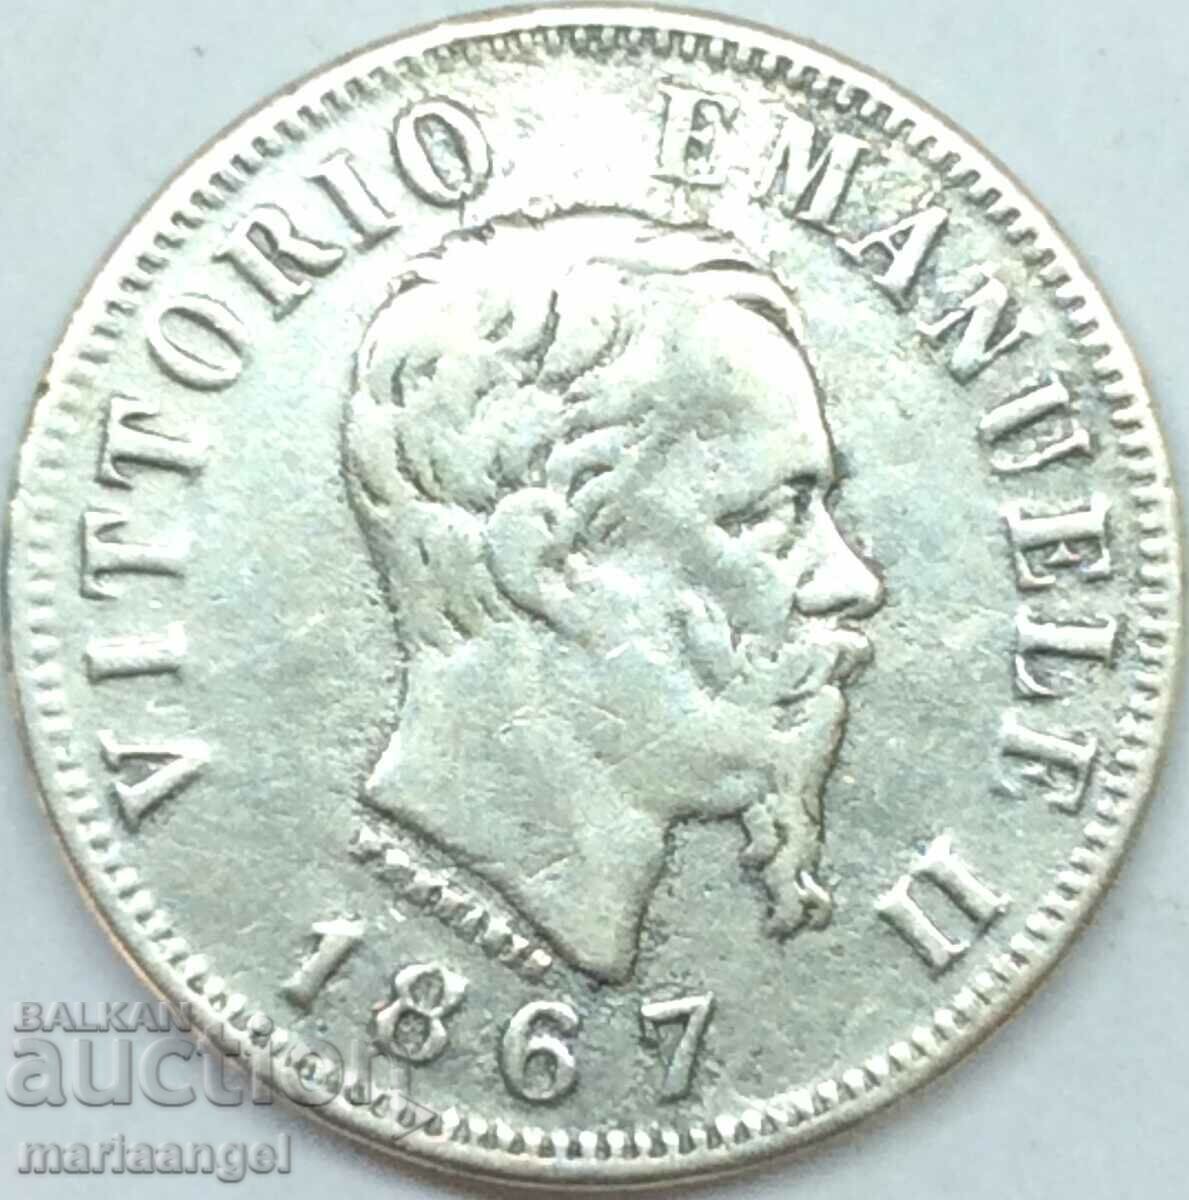 1867 50 centesimi Ιταλία Νάπολη ασήμι